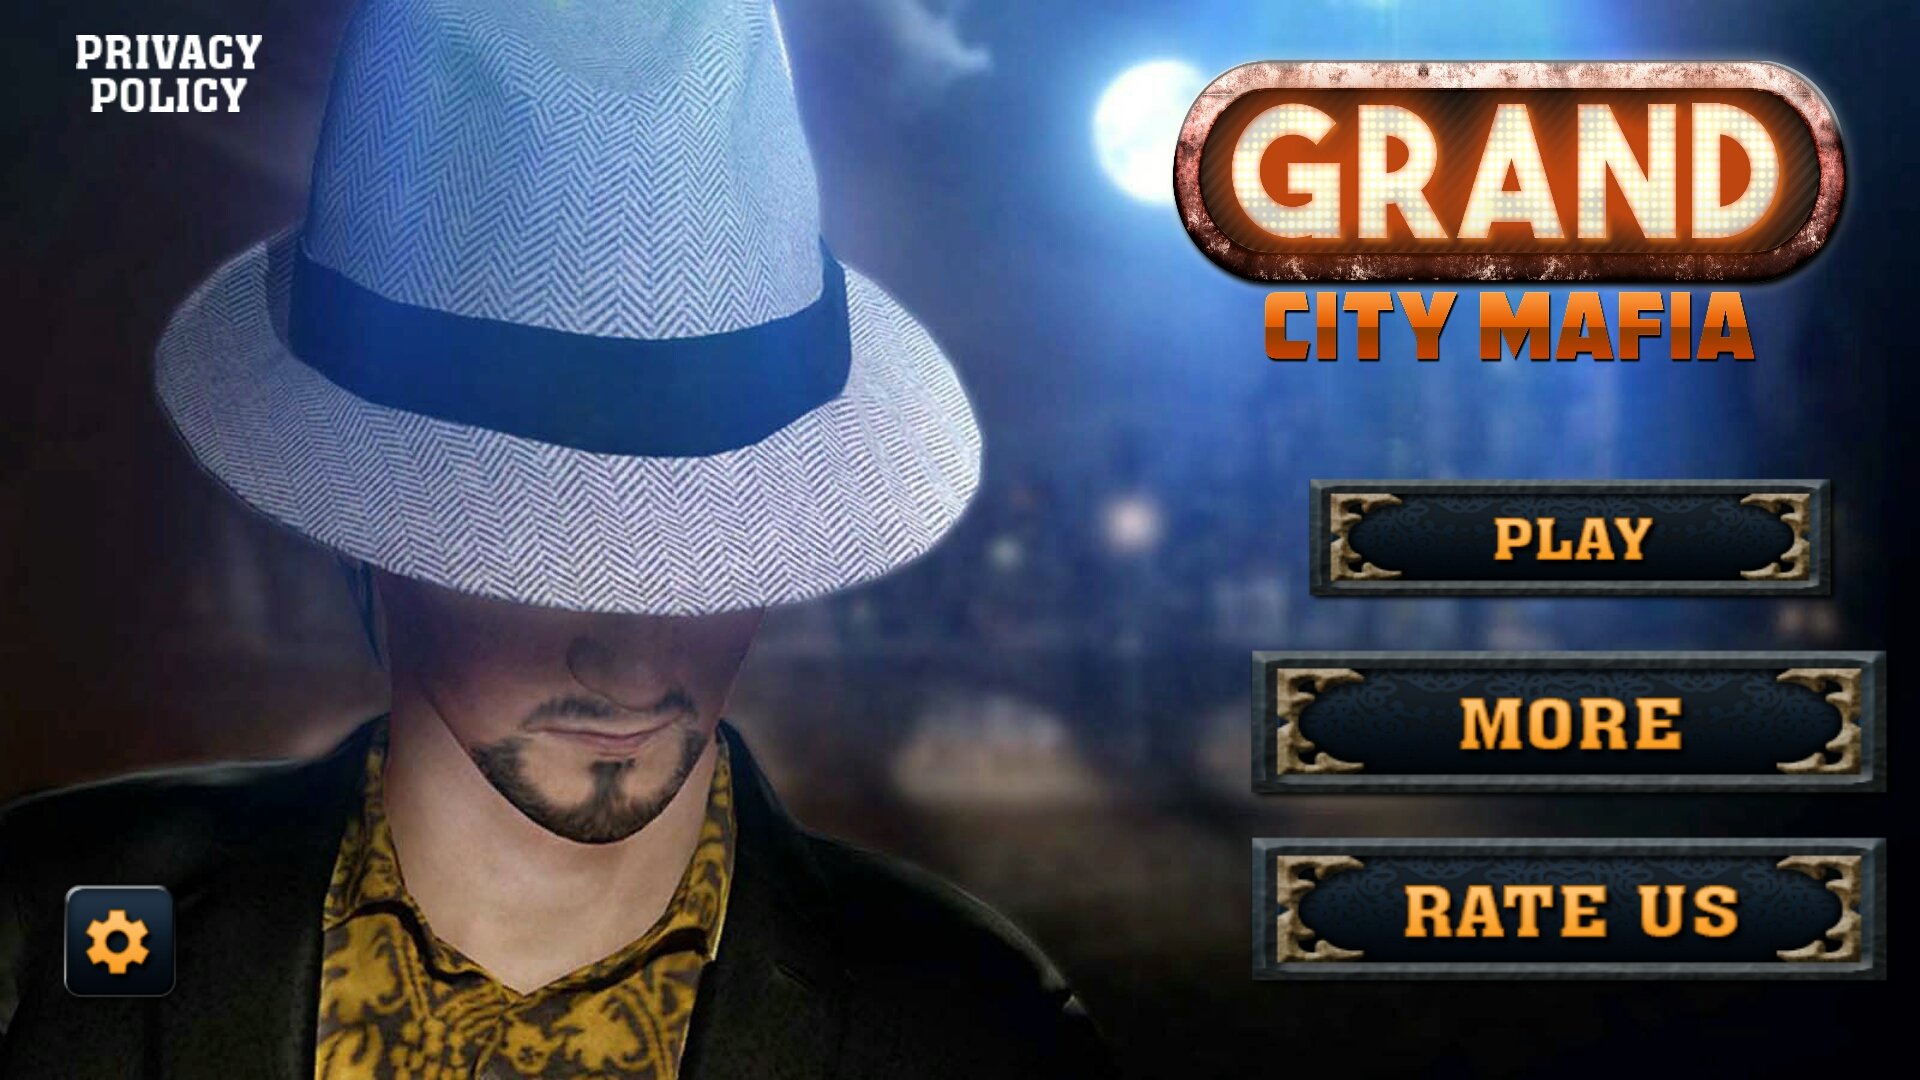 grand wars mafia city promo code